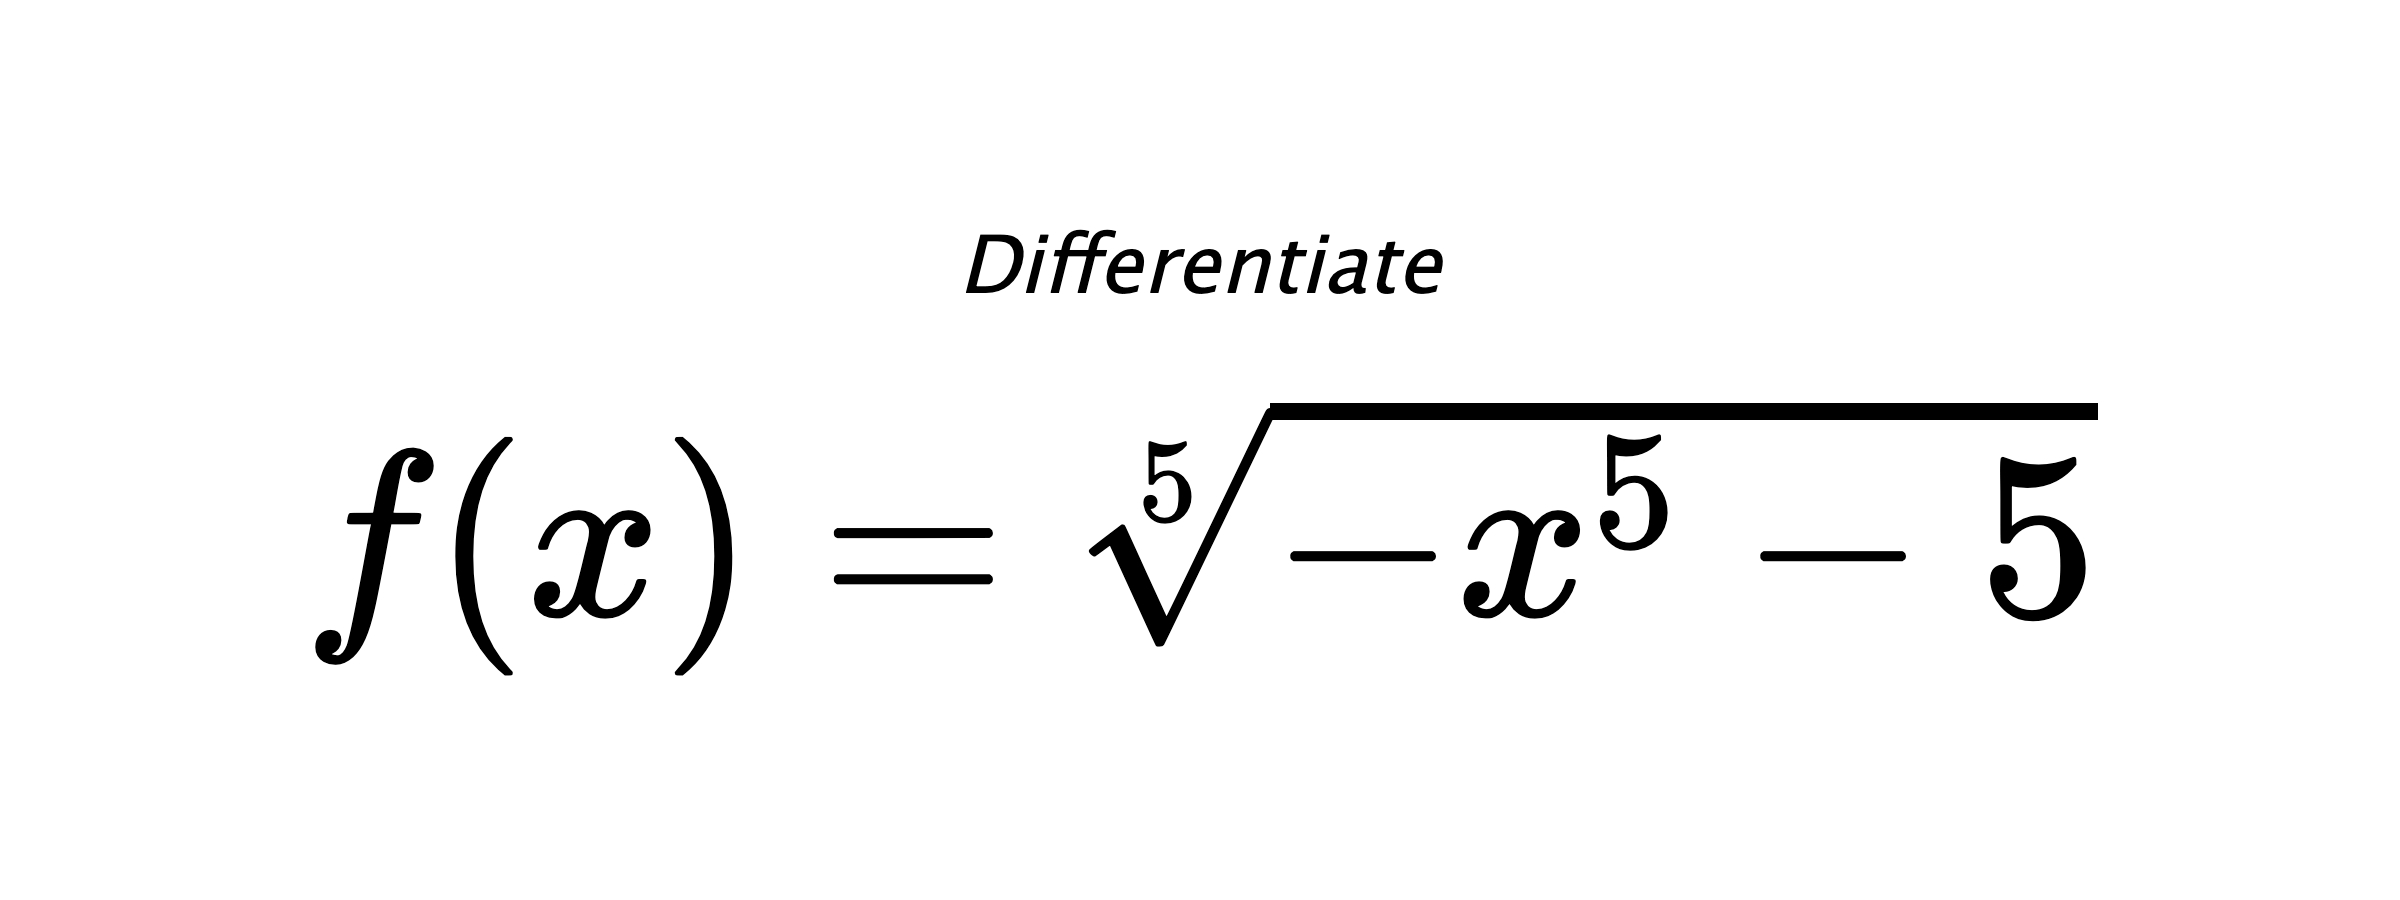 Differentiate $ f(x) = \sqrt[5]{- x^{5} - 5} $